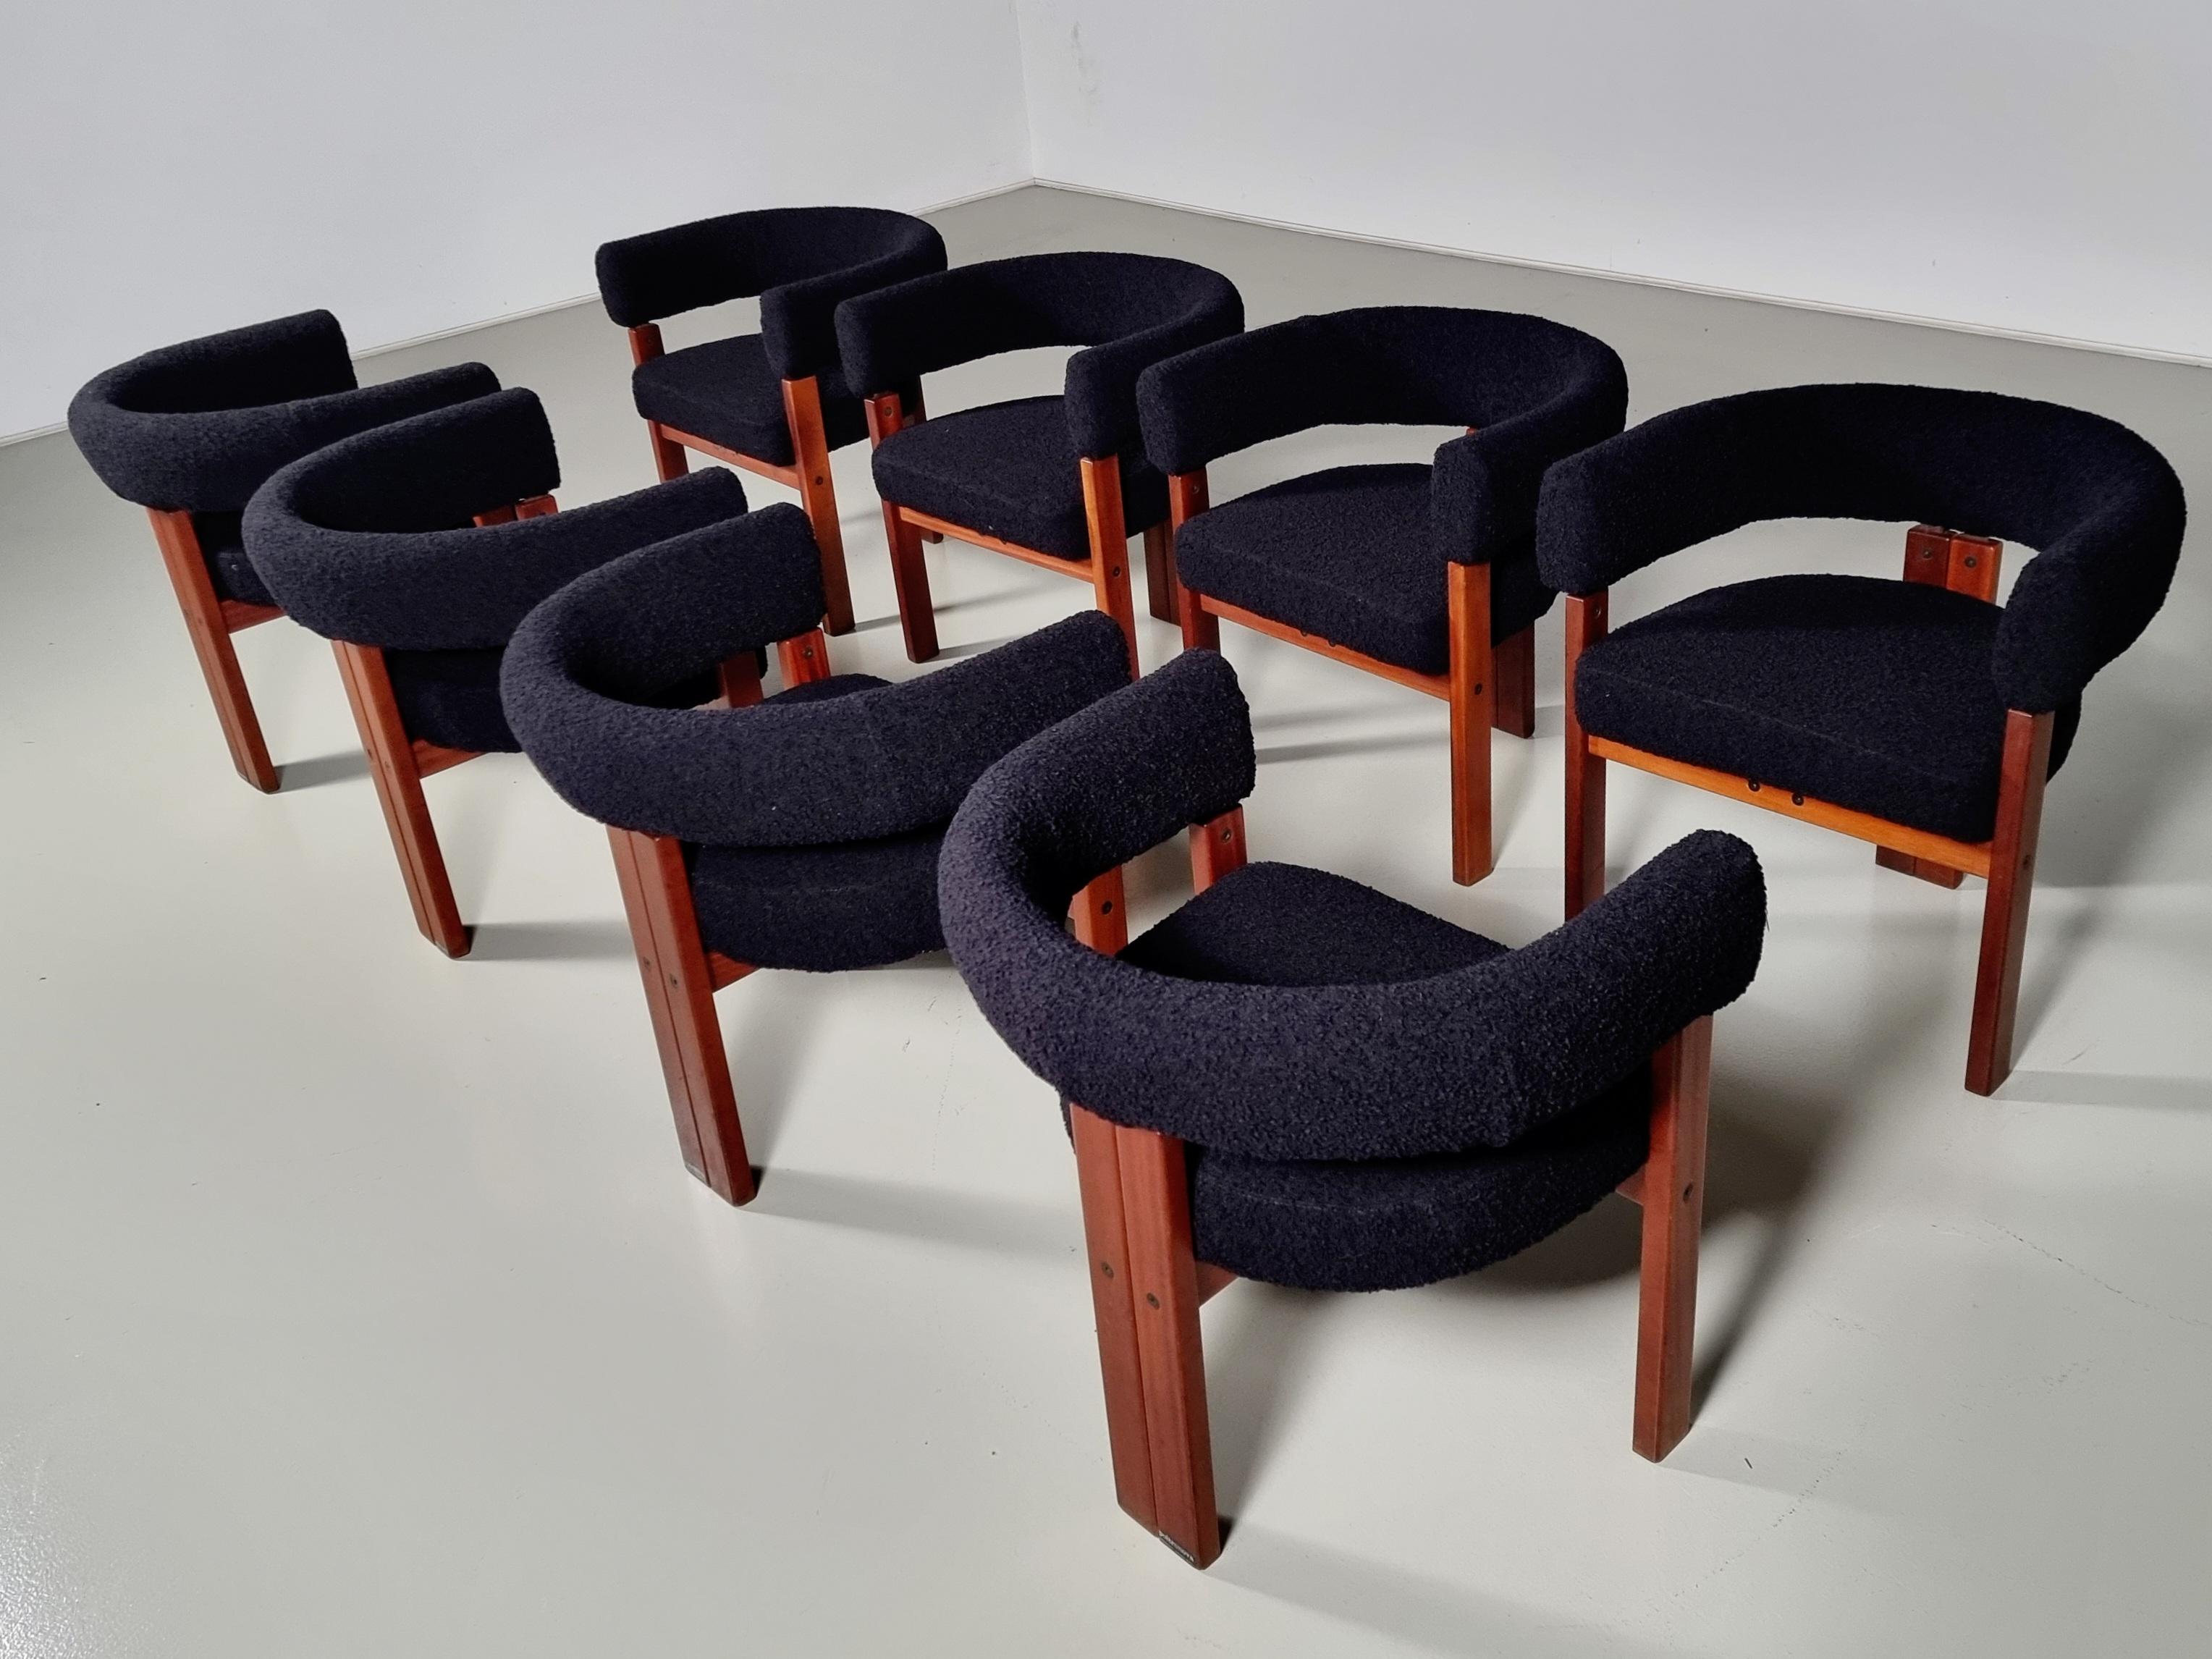 Ensemble de 8 chaises de salle à manger/cocktail d'Ettore Sottsass pour Poltronova, Italie, dans les années 1970. Un design simpliste mais très fort dans ses lignes et ses proportions. Merveilleuse structure en bois de teck massif, qui se prolonge